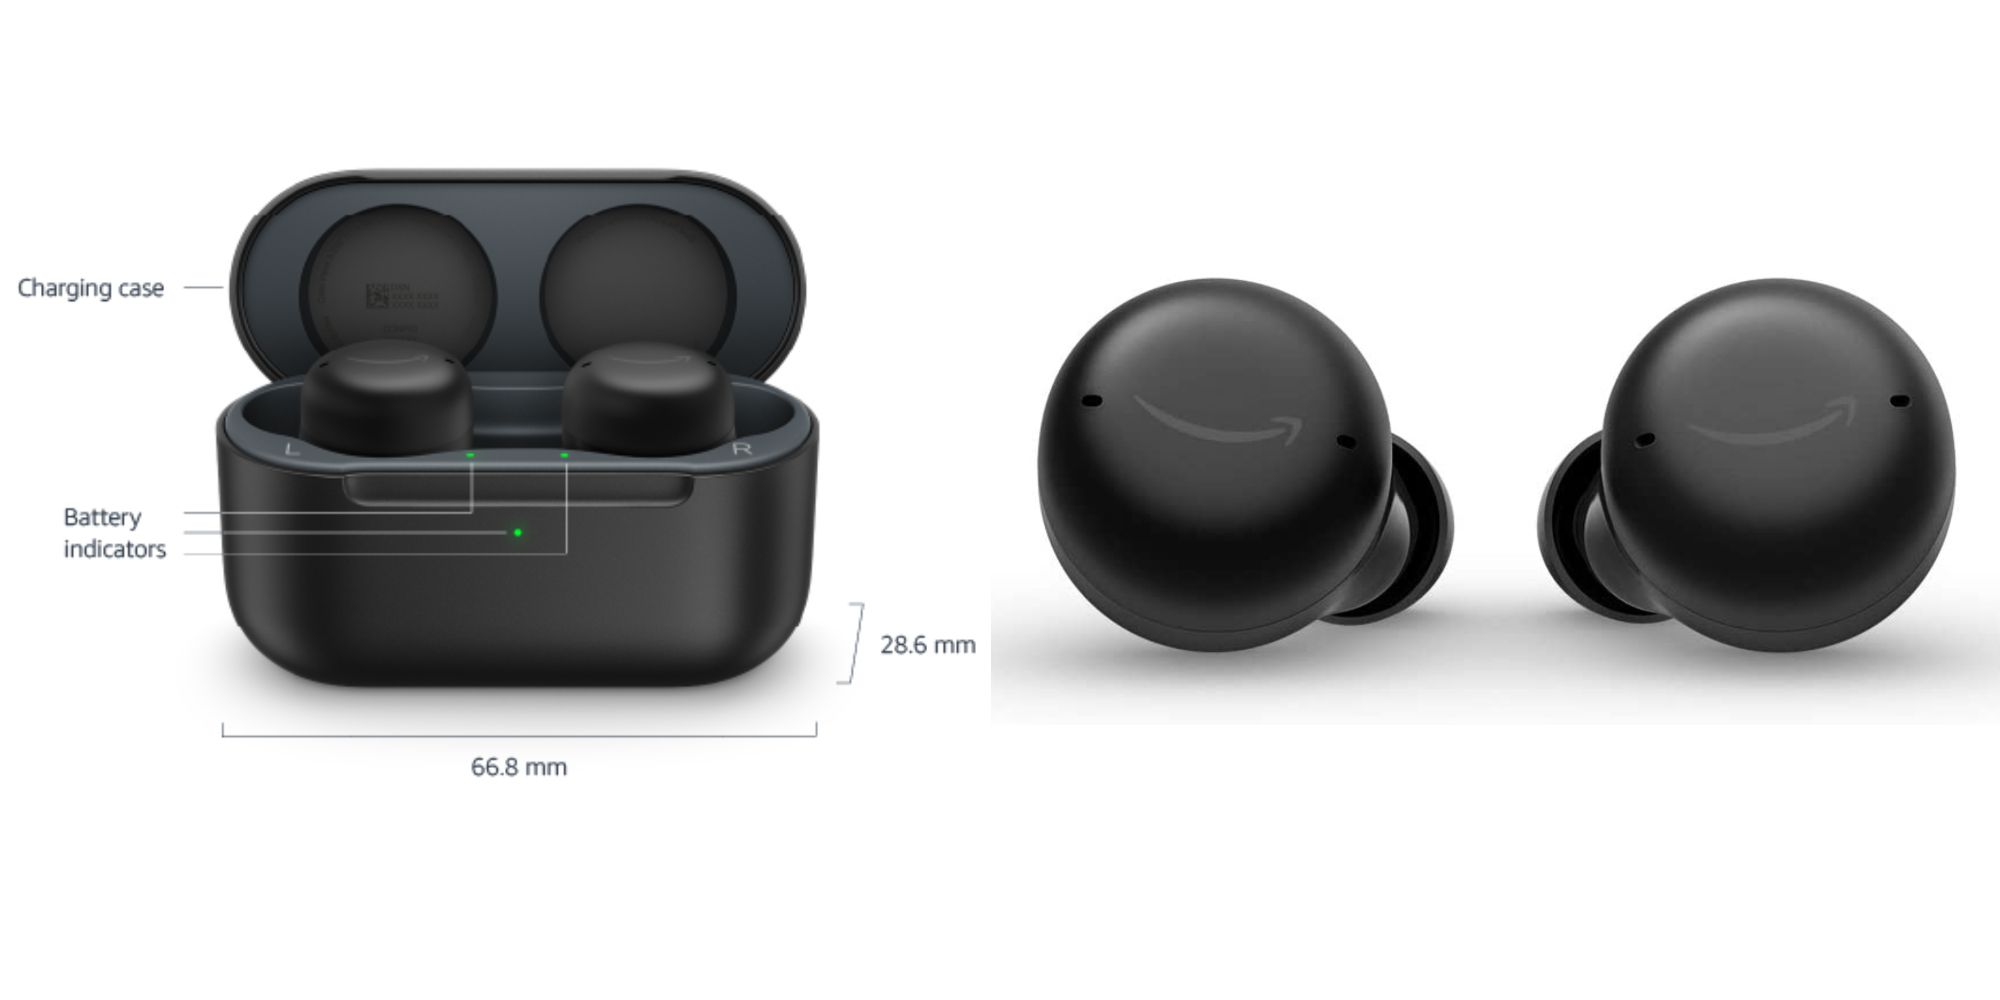 Fones de ouvido Echo Dot da Amazon com estojo de carregamento sem fio (2ª geração)